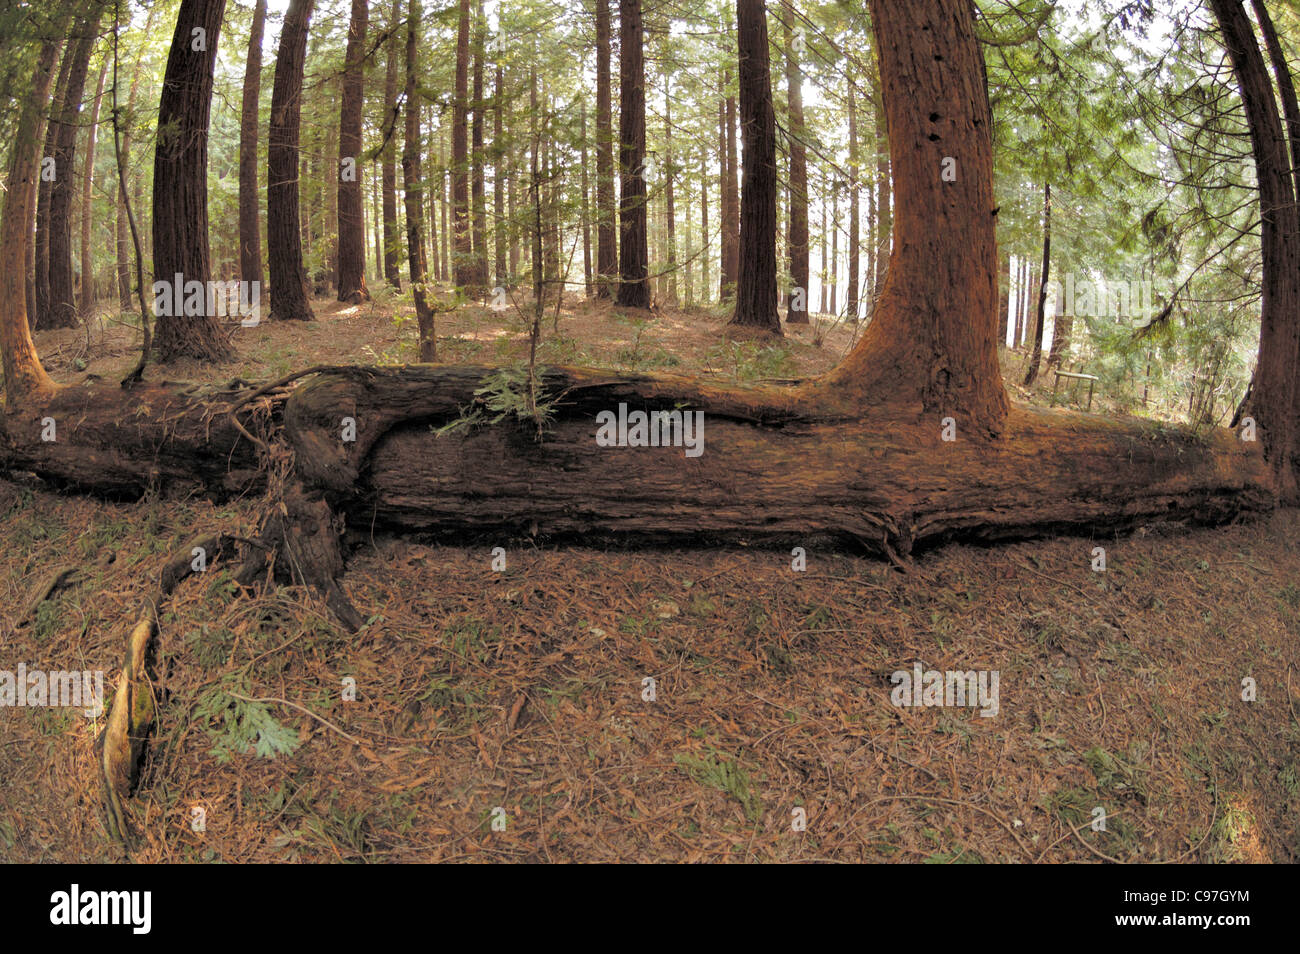 Fallen Coastal Redwood tree regrowing, sequoia sempervirens Stock Photo